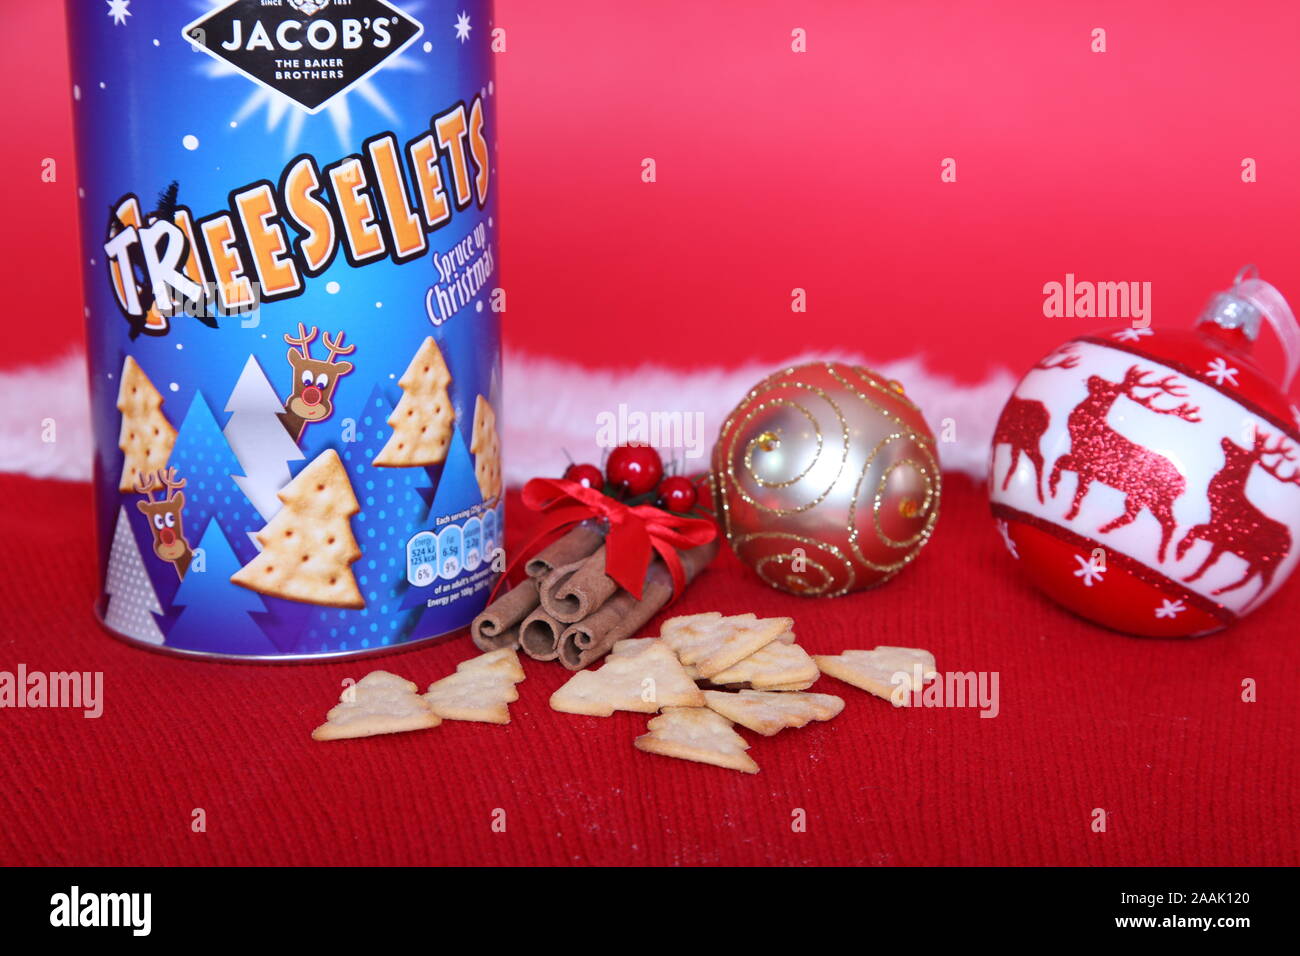 Edition 2019 Treeselets Jacobs, en forme d'arbre de Noël / chips crackers, basé sur Cheeselets Banque D'Images